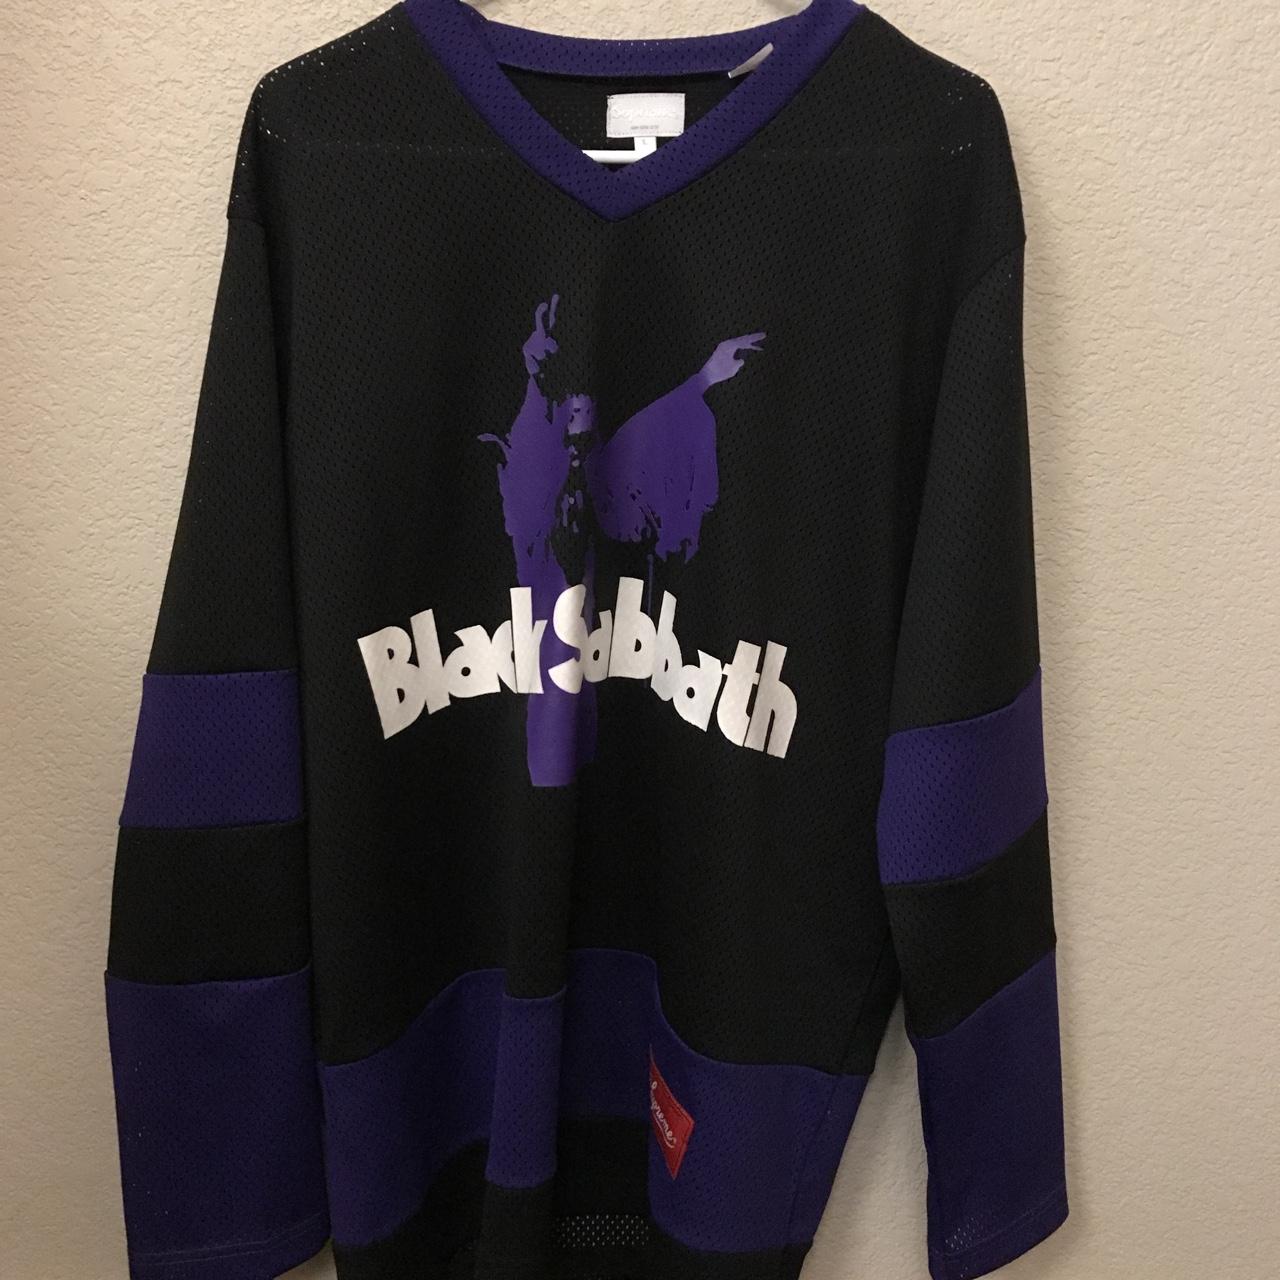 Supreme Black Sabbath hockey jersey. 9/10 condition....